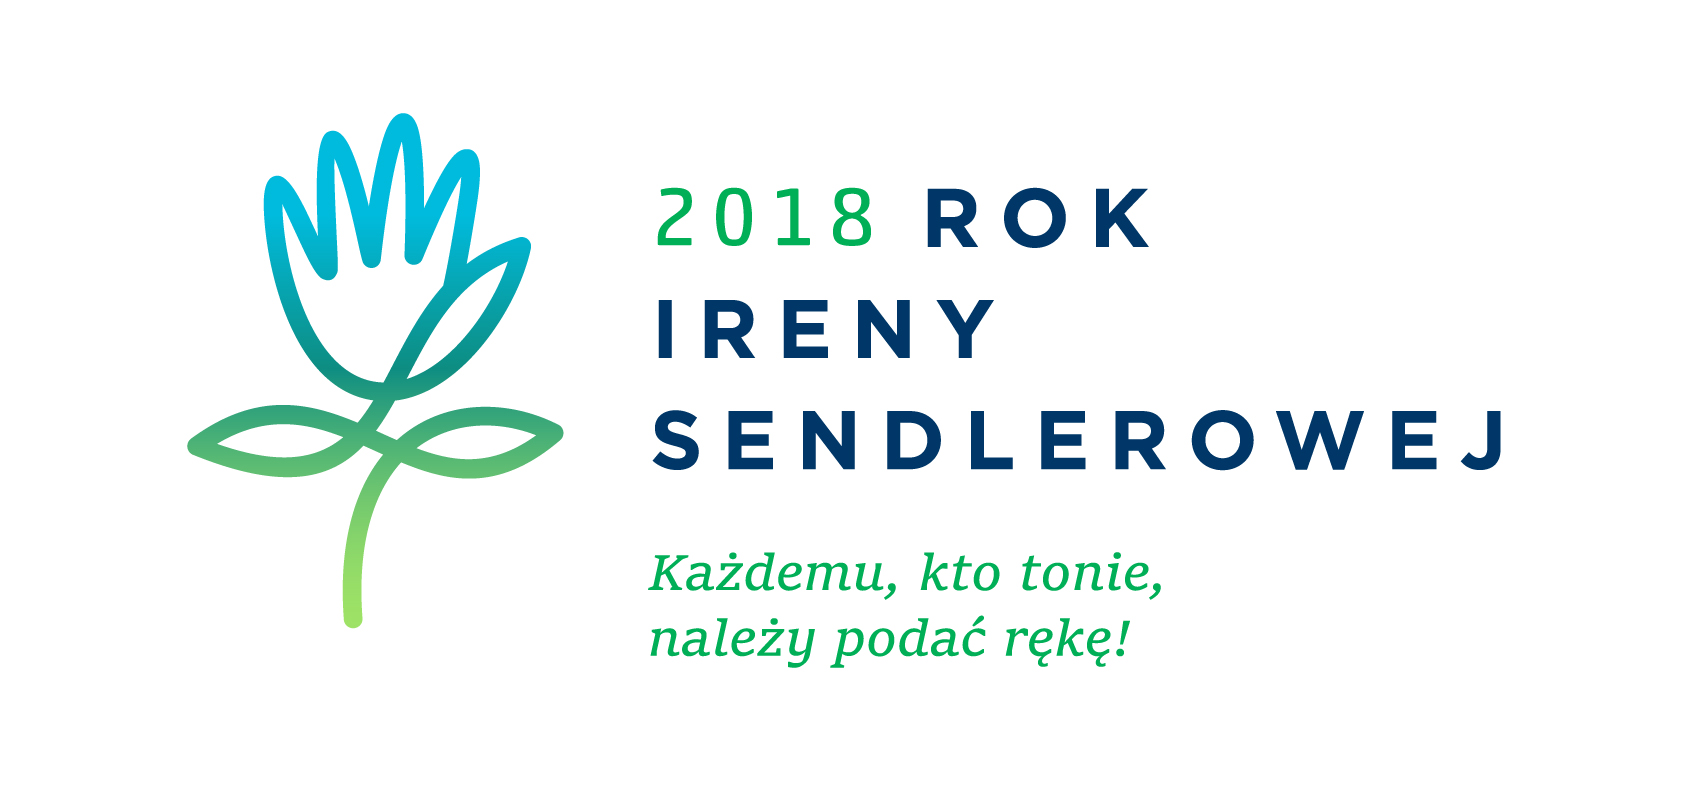 2018 Rok Ireny Sendlerowej z cytatem